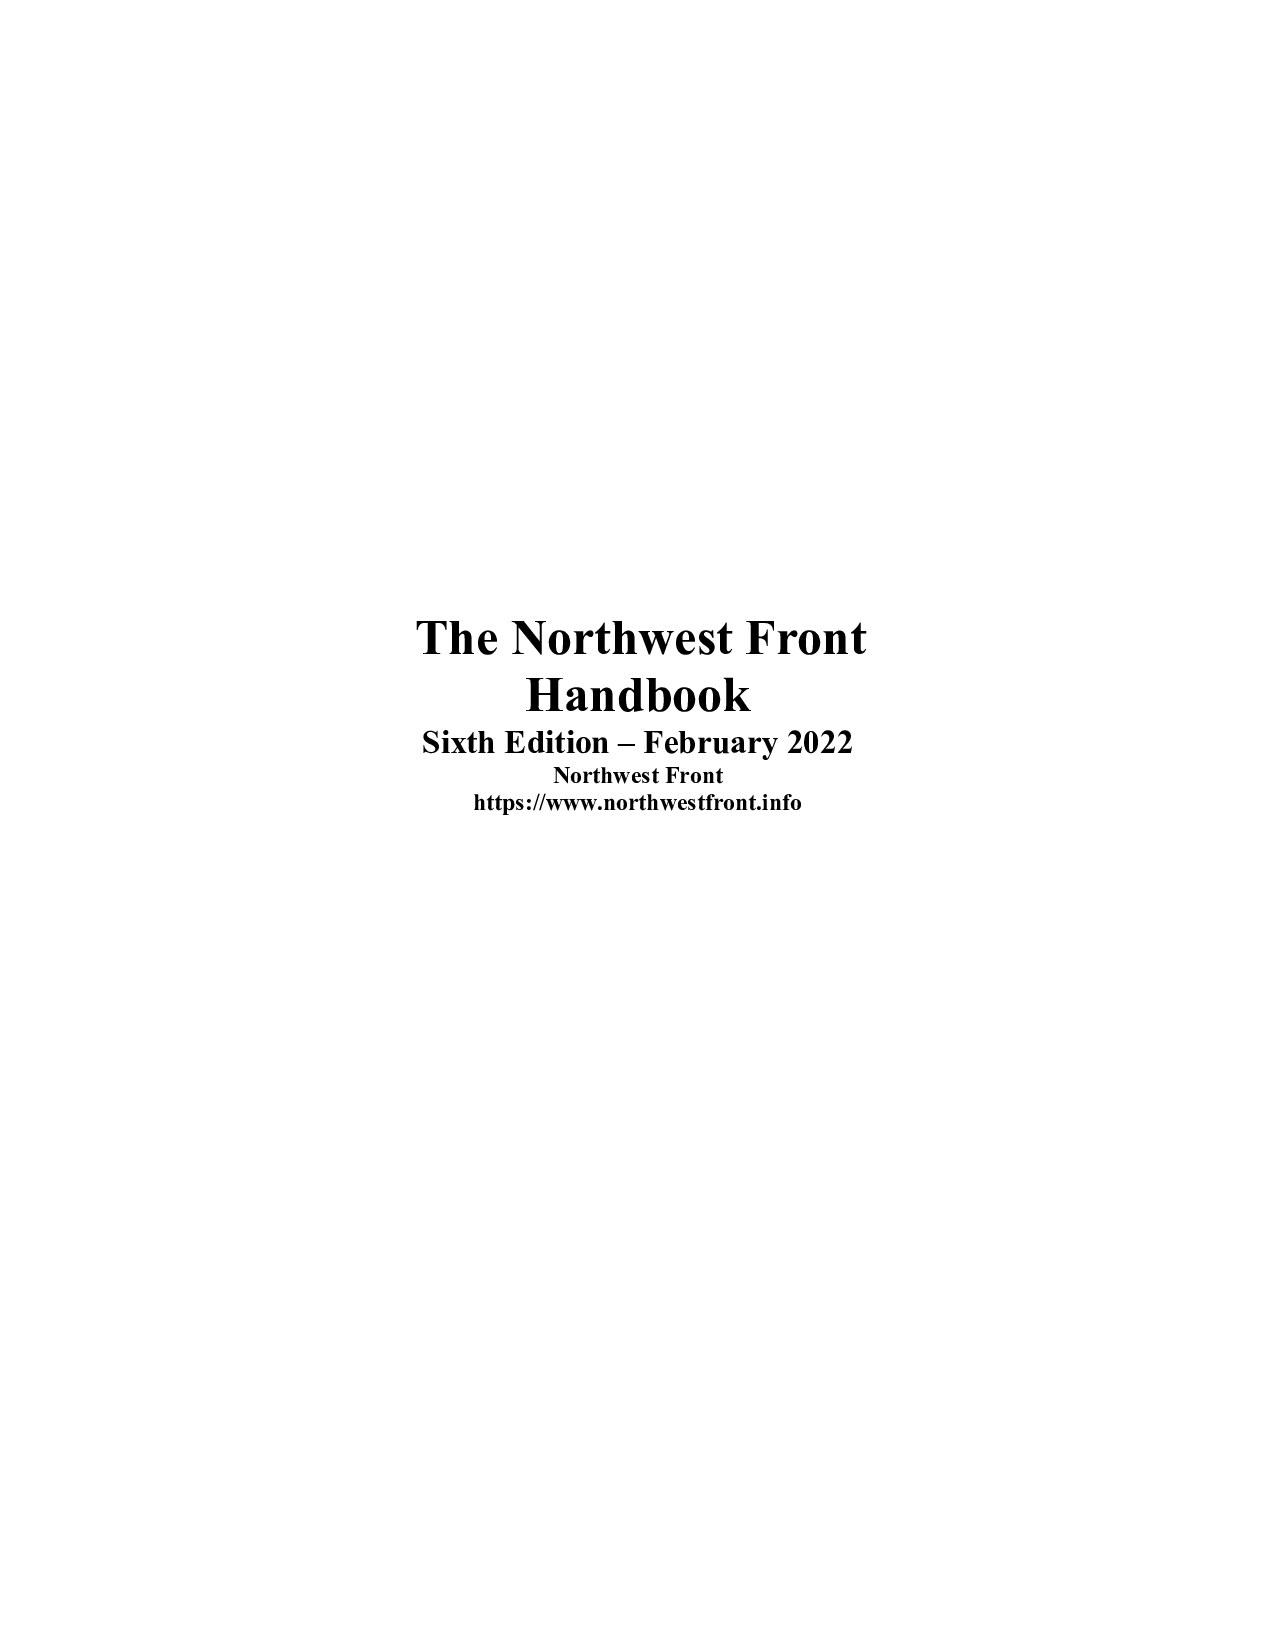 The Northwest Front Handbook